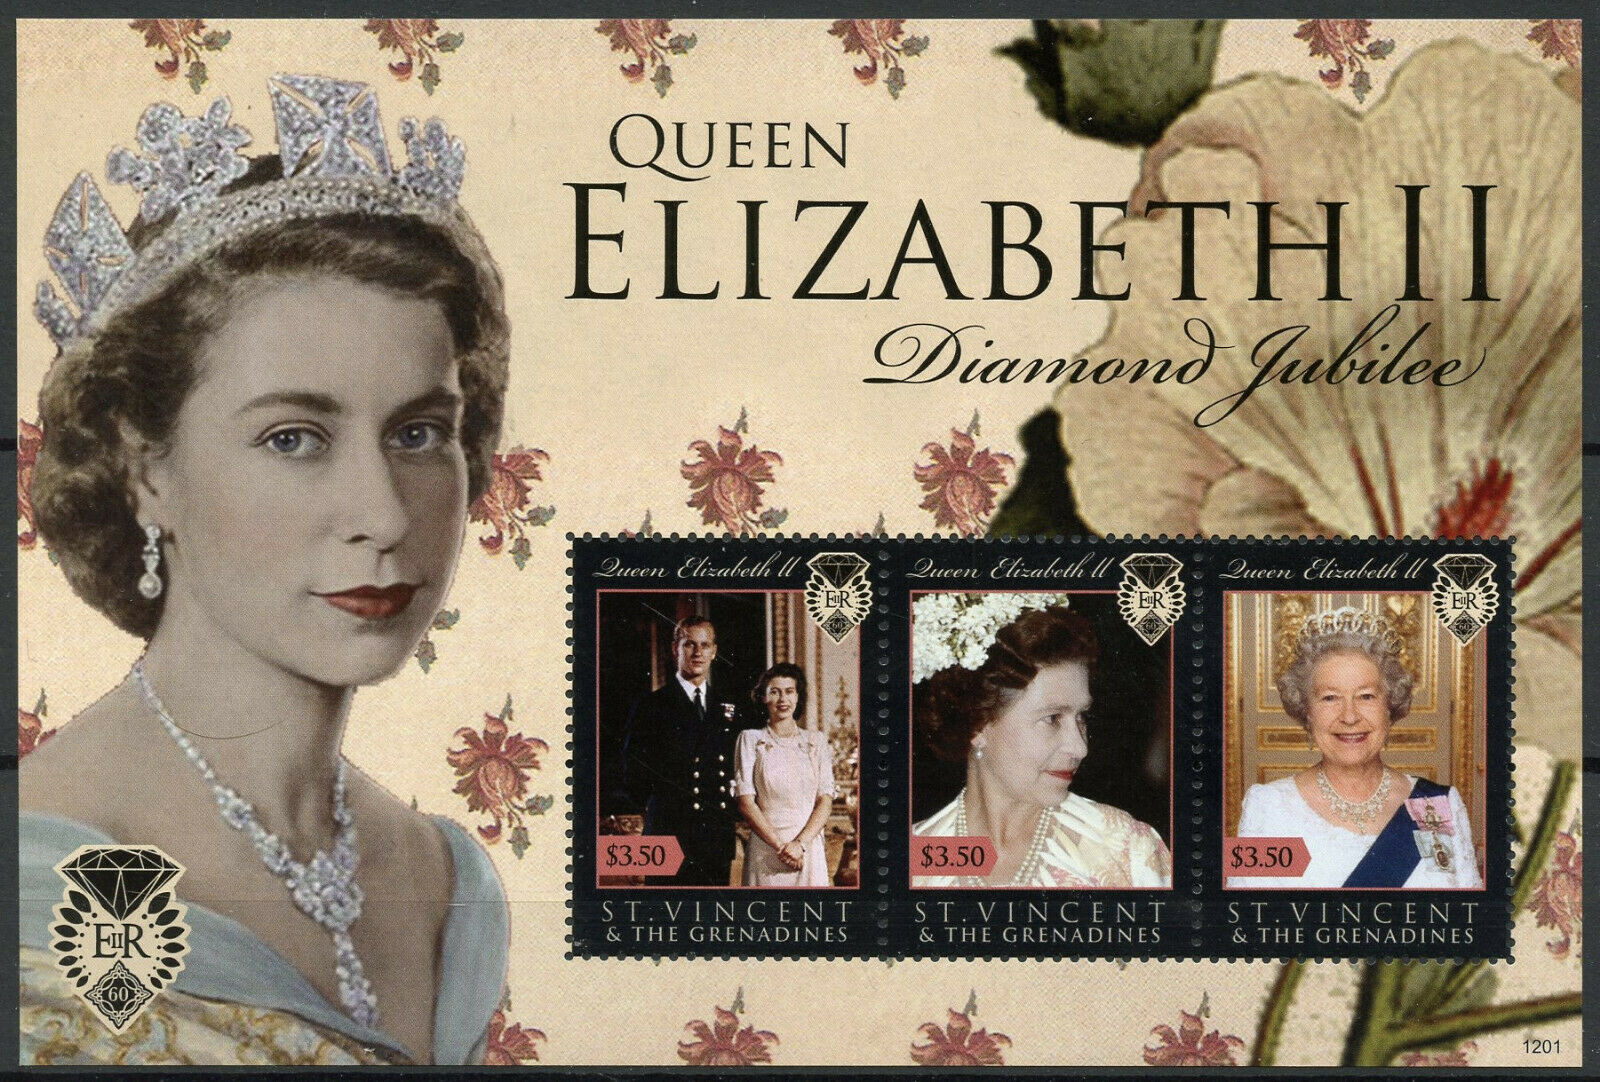 St Vincent & Grenadines 2012 MNH Royalty Stamps Queen Elizabeth II Diamond Jubilee 3v M/S